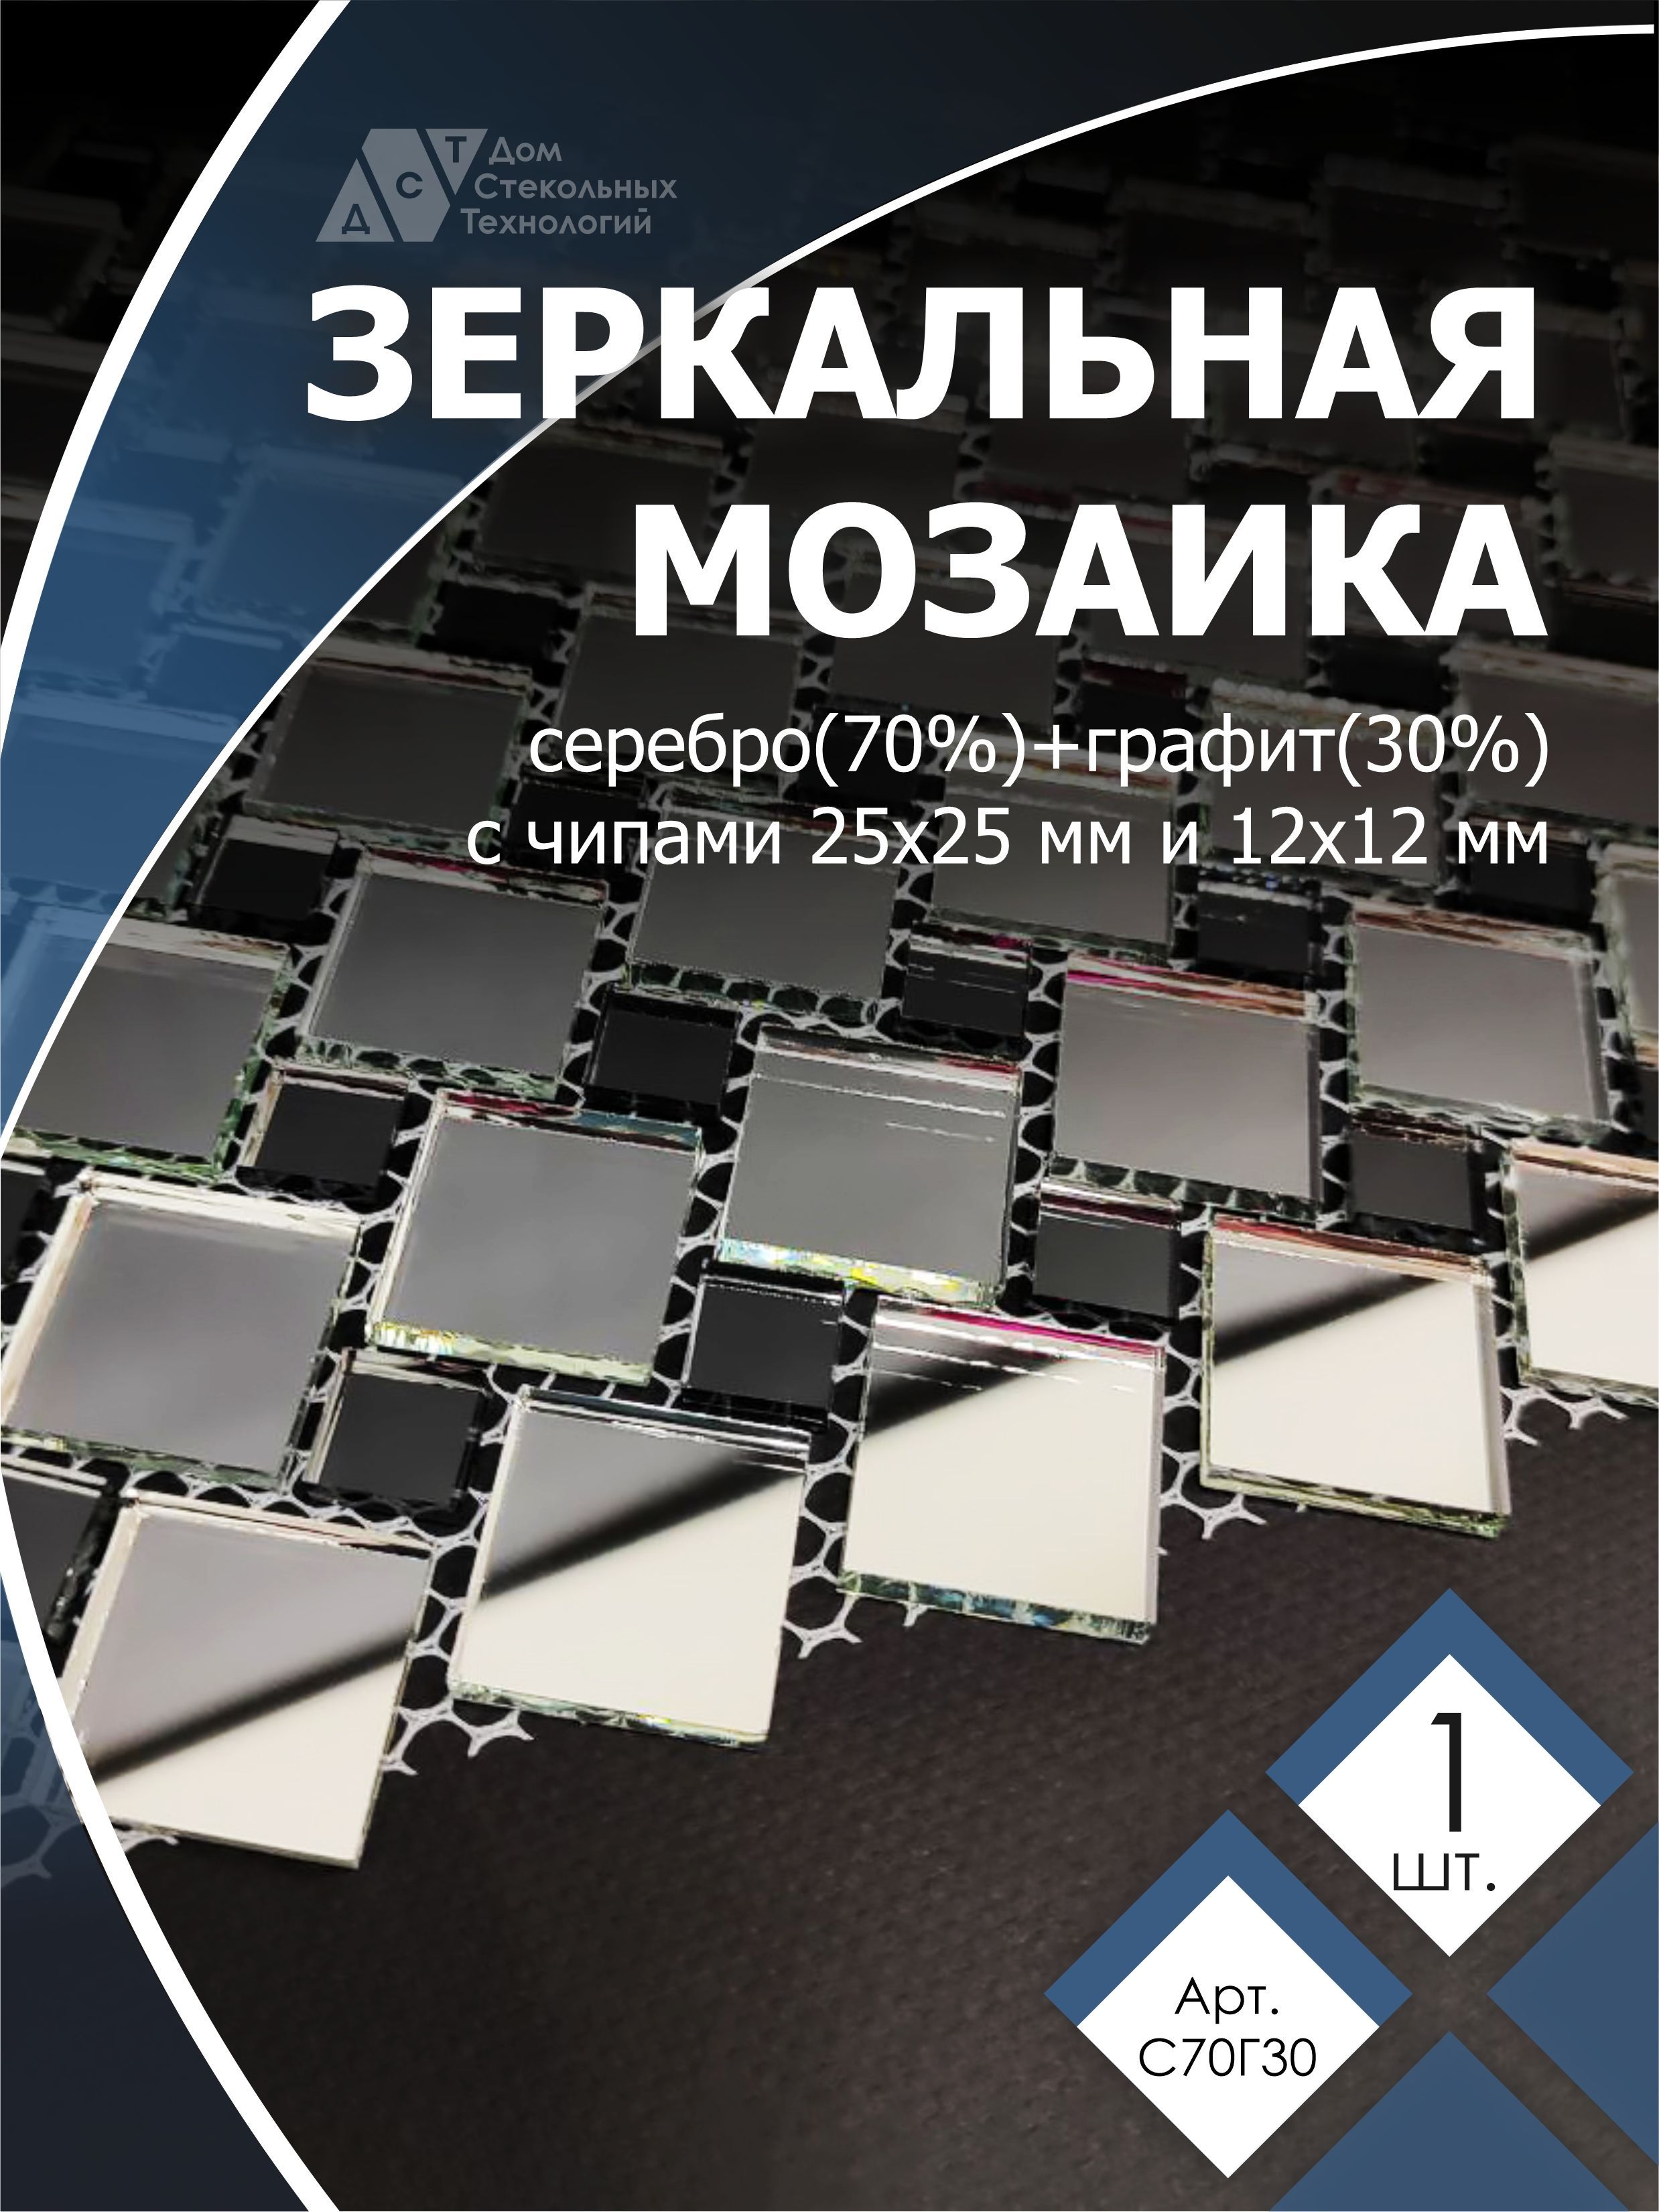 фото Зеркальная мозаика на сетке, дст, 300х300 мм, серебро 70%, графит 30% (1 лист) дом стекольных технологий